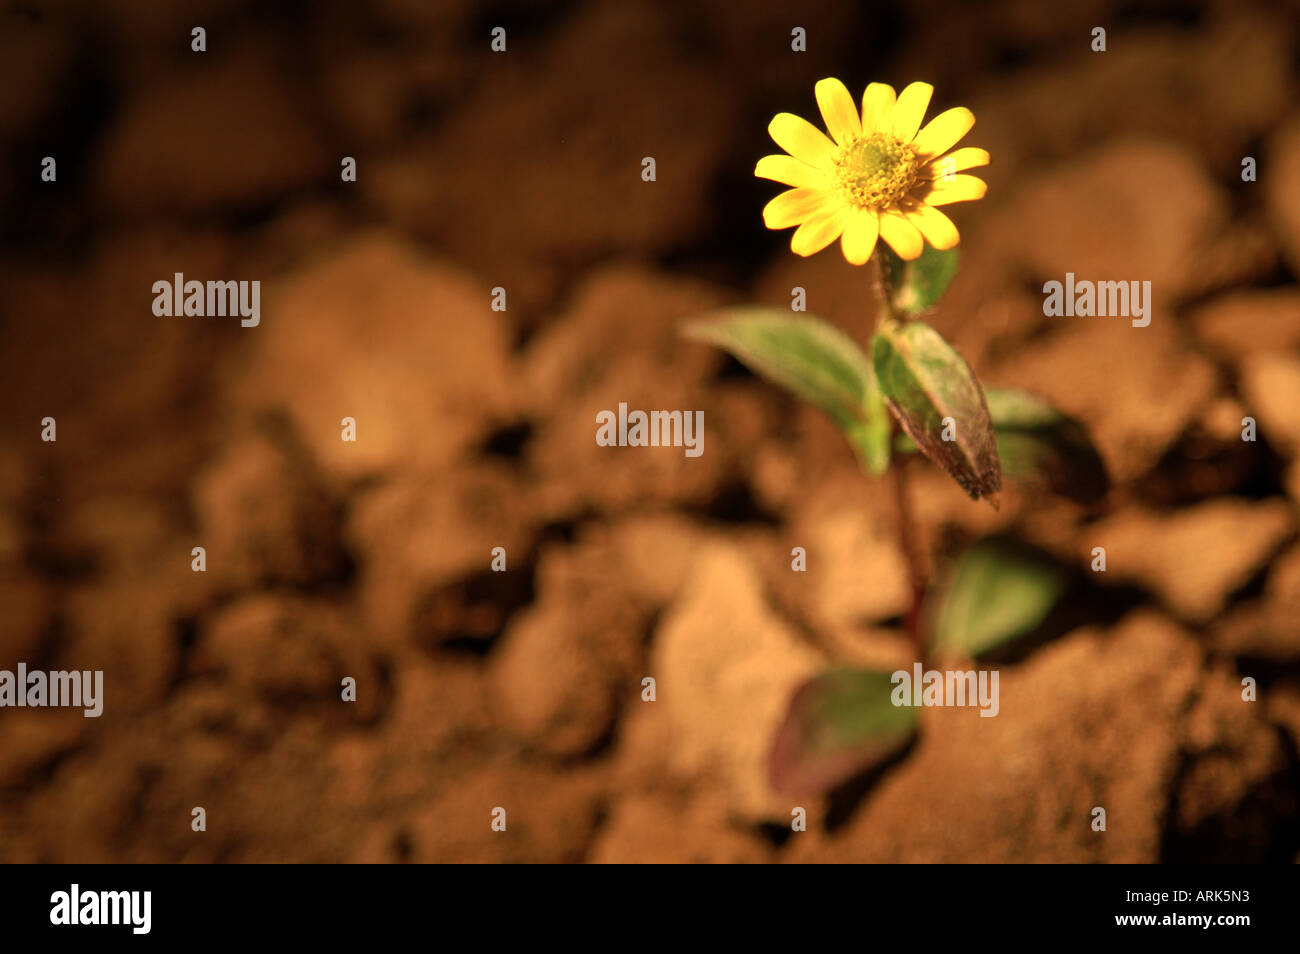 Symbolische Foto: eine einsame Blume steht allein auf einem Hektar durch einen Lichtstrahl beleuchtet. Einsamkeit, Einsamkeit, Verlassenheit Stockfoto